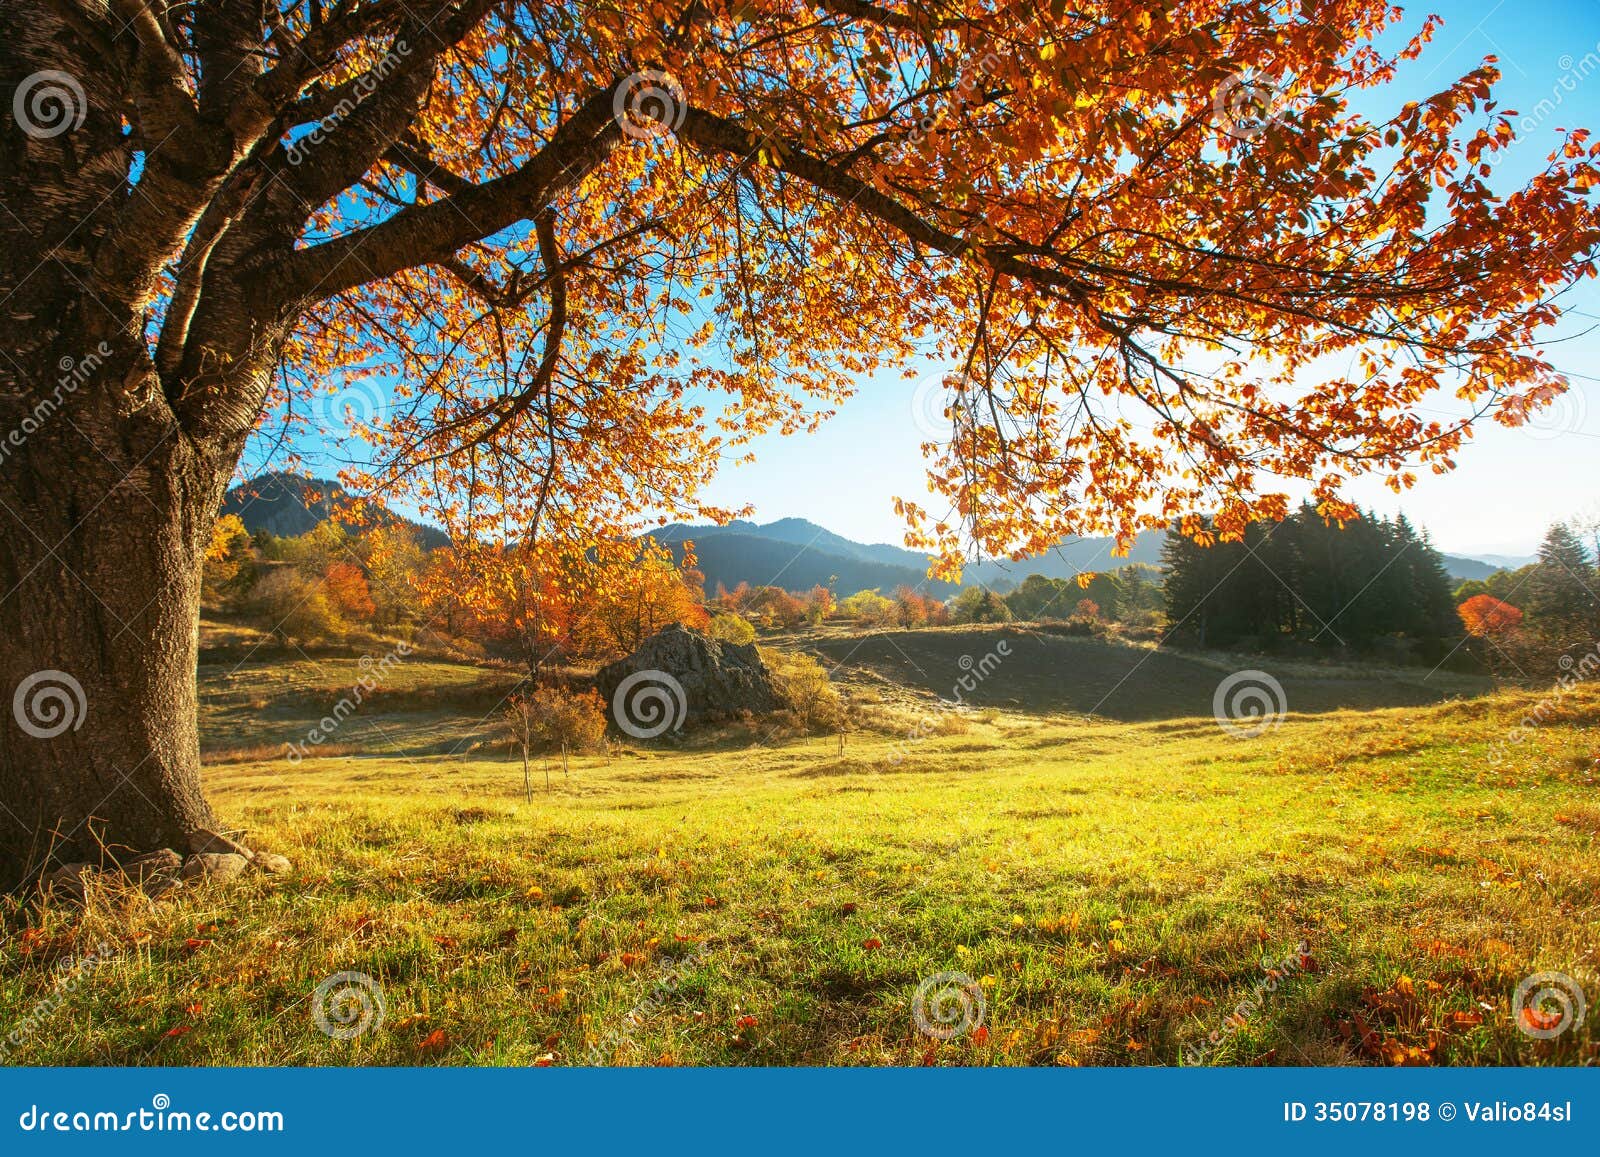 autumn landscape